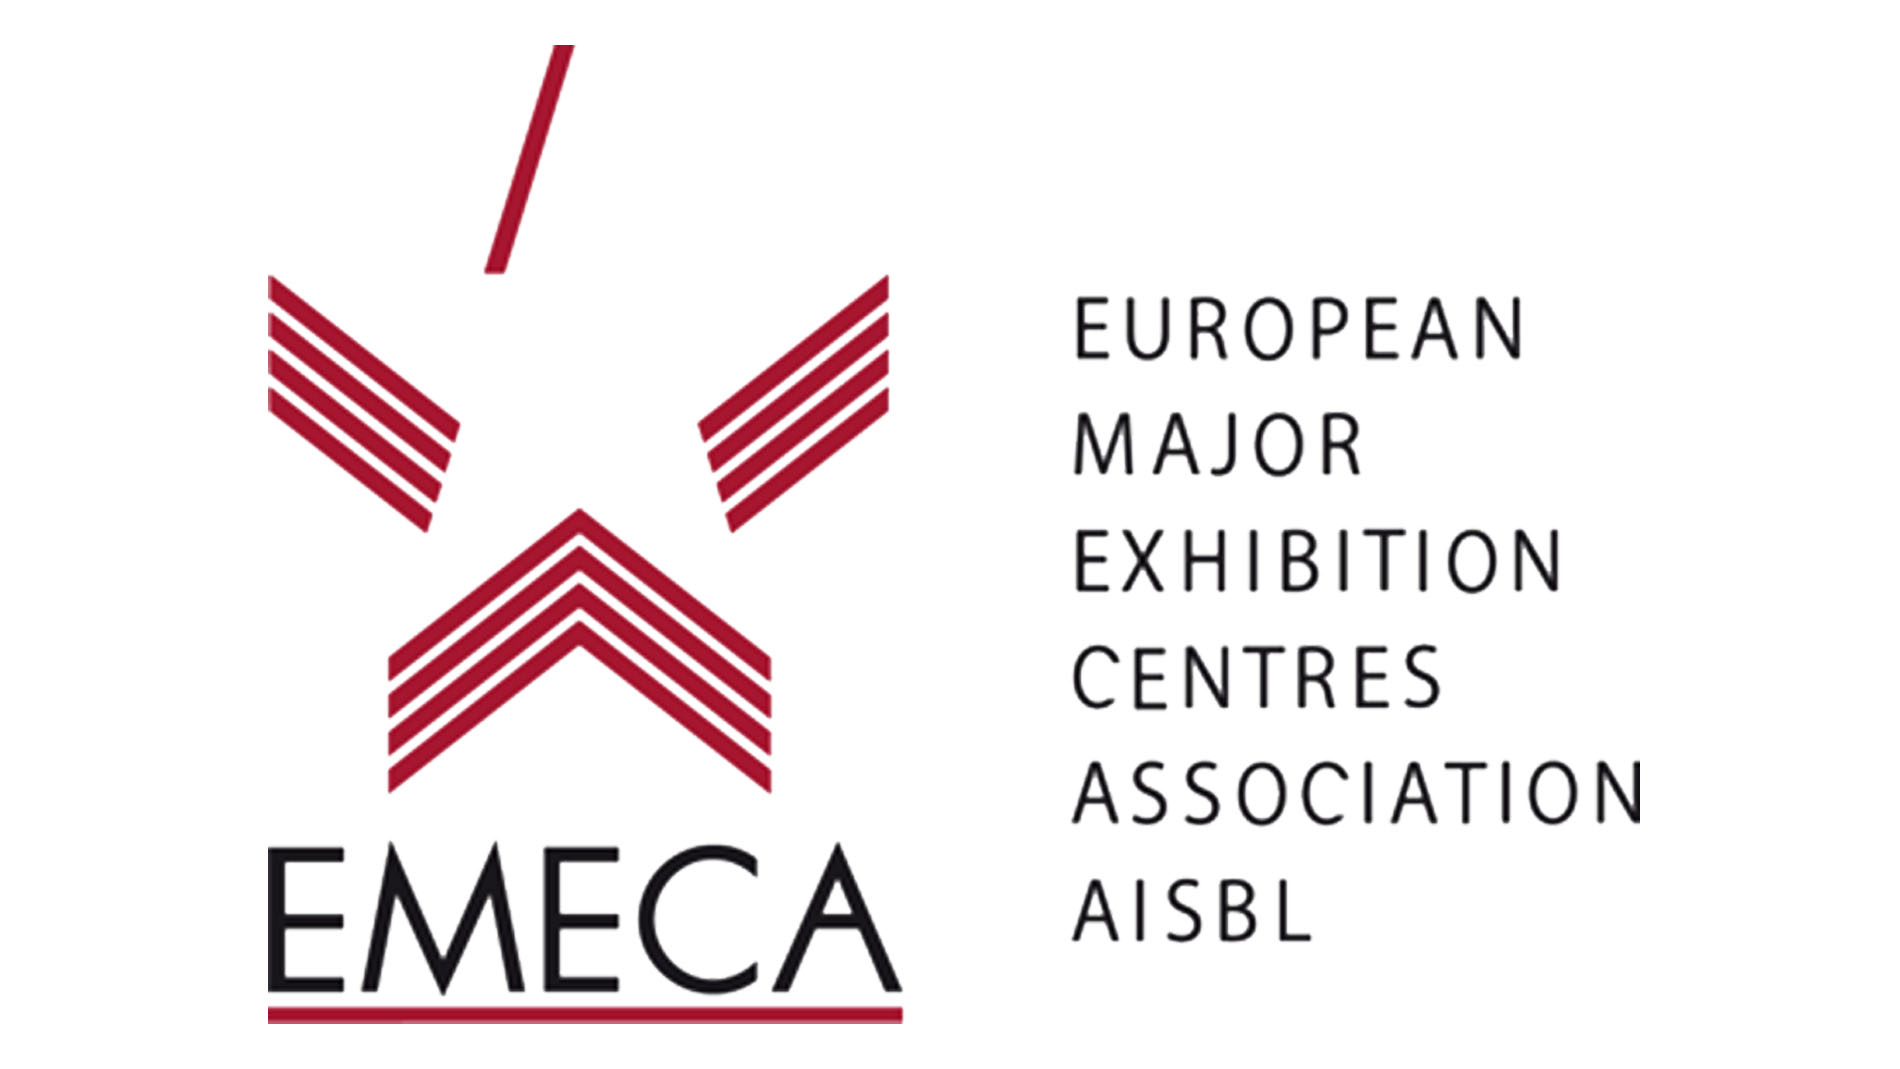 European Major Exhibition Centres Association